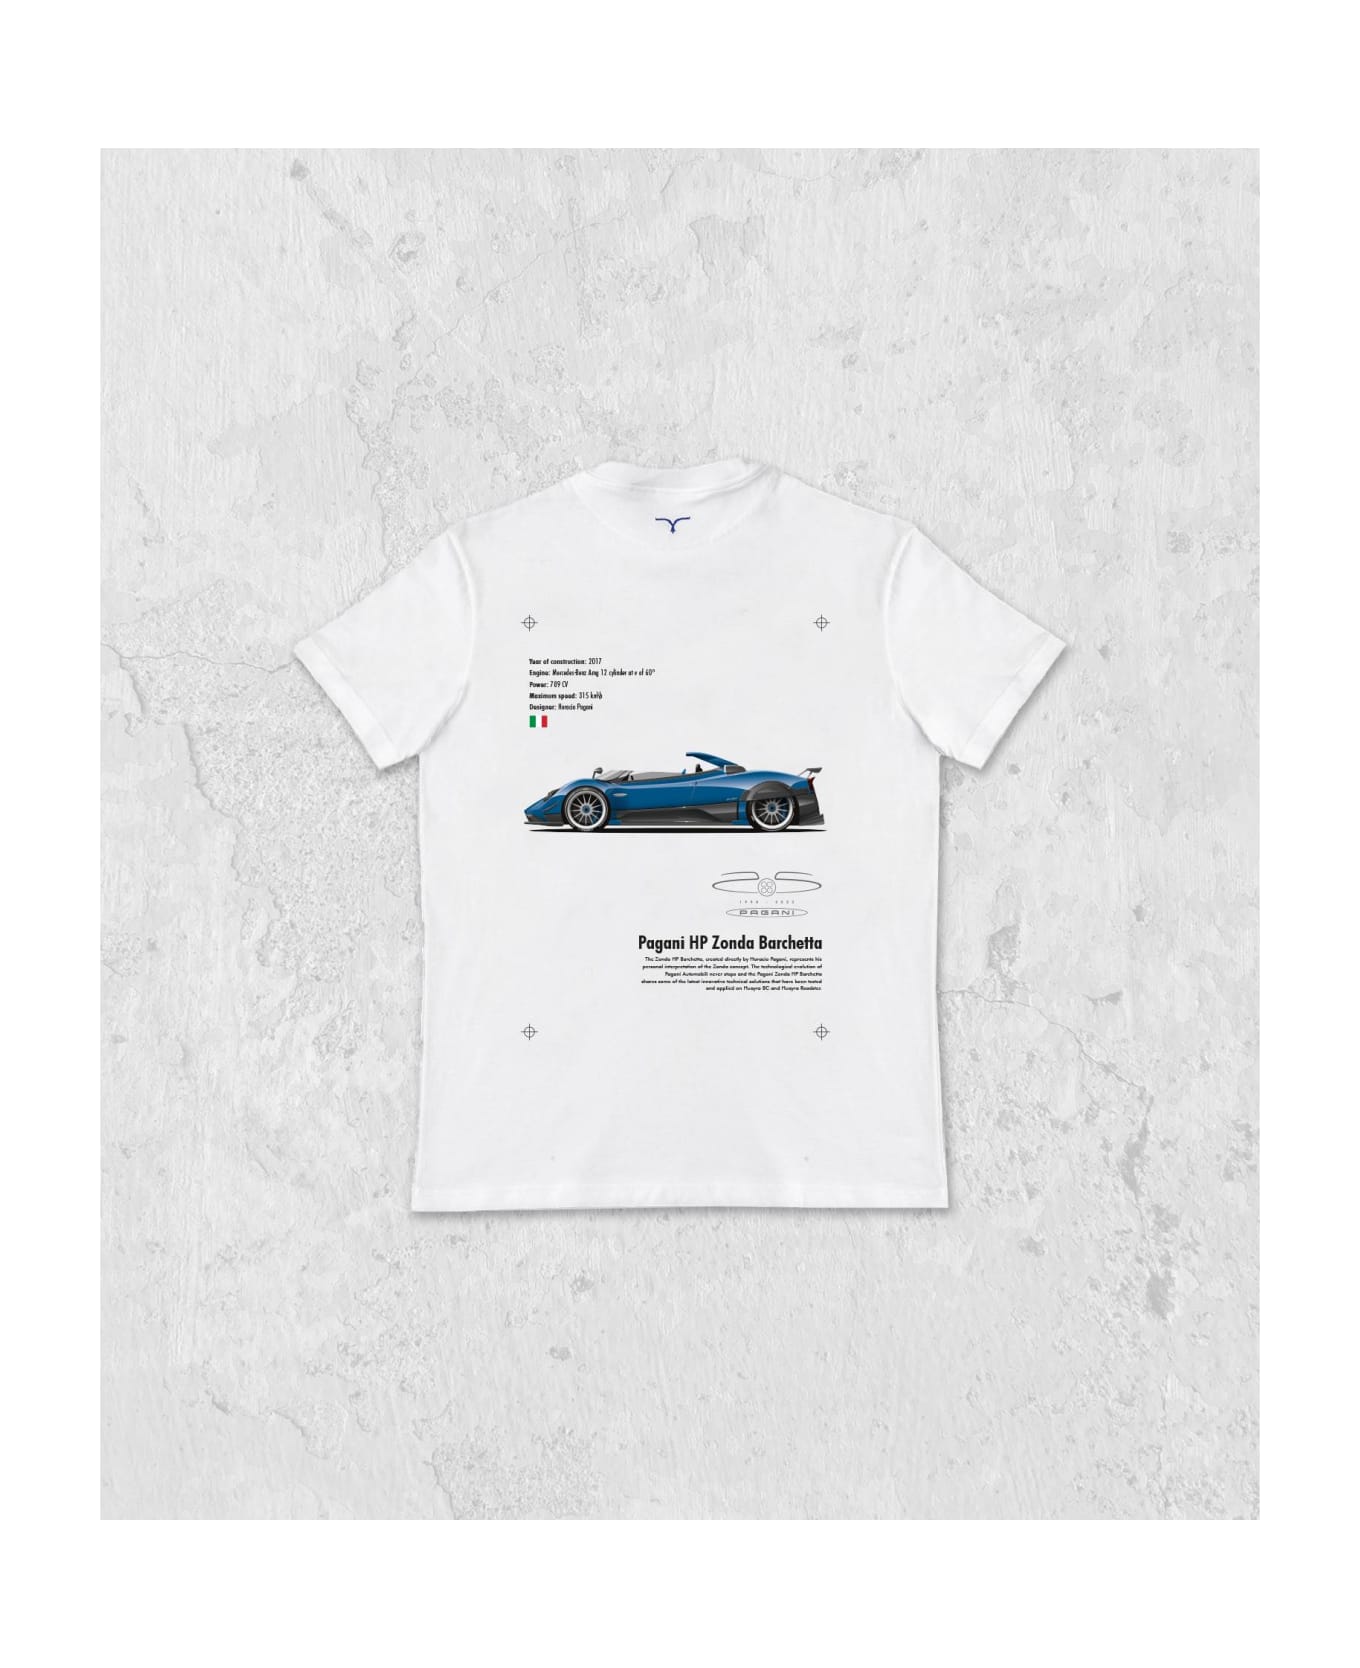 Larusmiani The Automotive Gallery - 02. Pagani Hp Barchetta T-Shirt - White シャツ